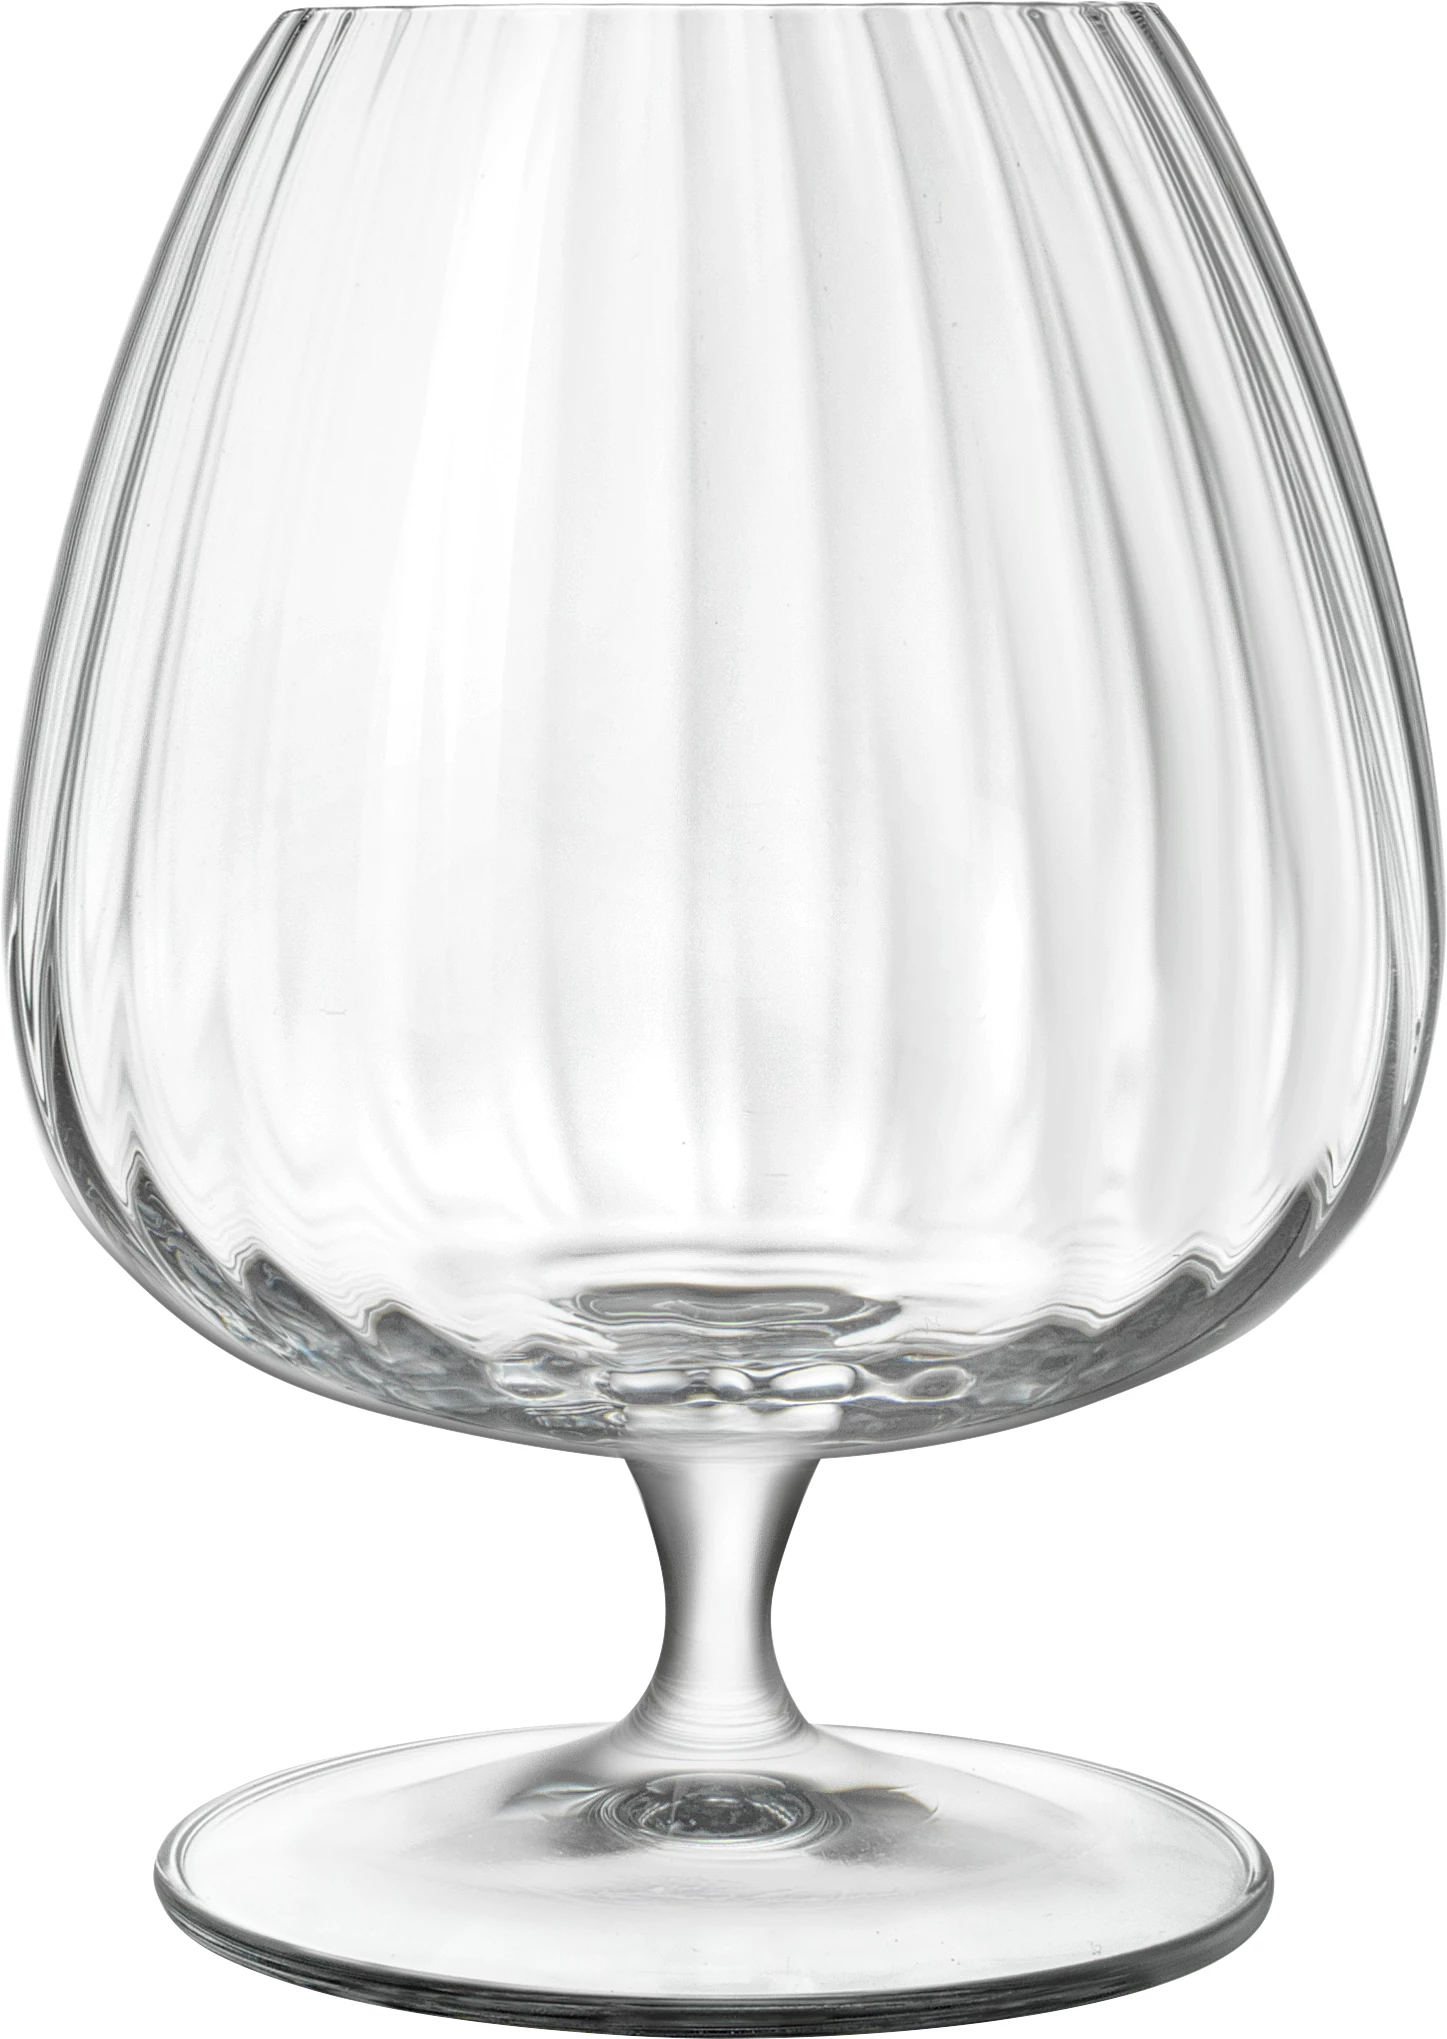 Luigi Bormioli Speakeasies cognacglas, 46,5 cl, H12,7 cm